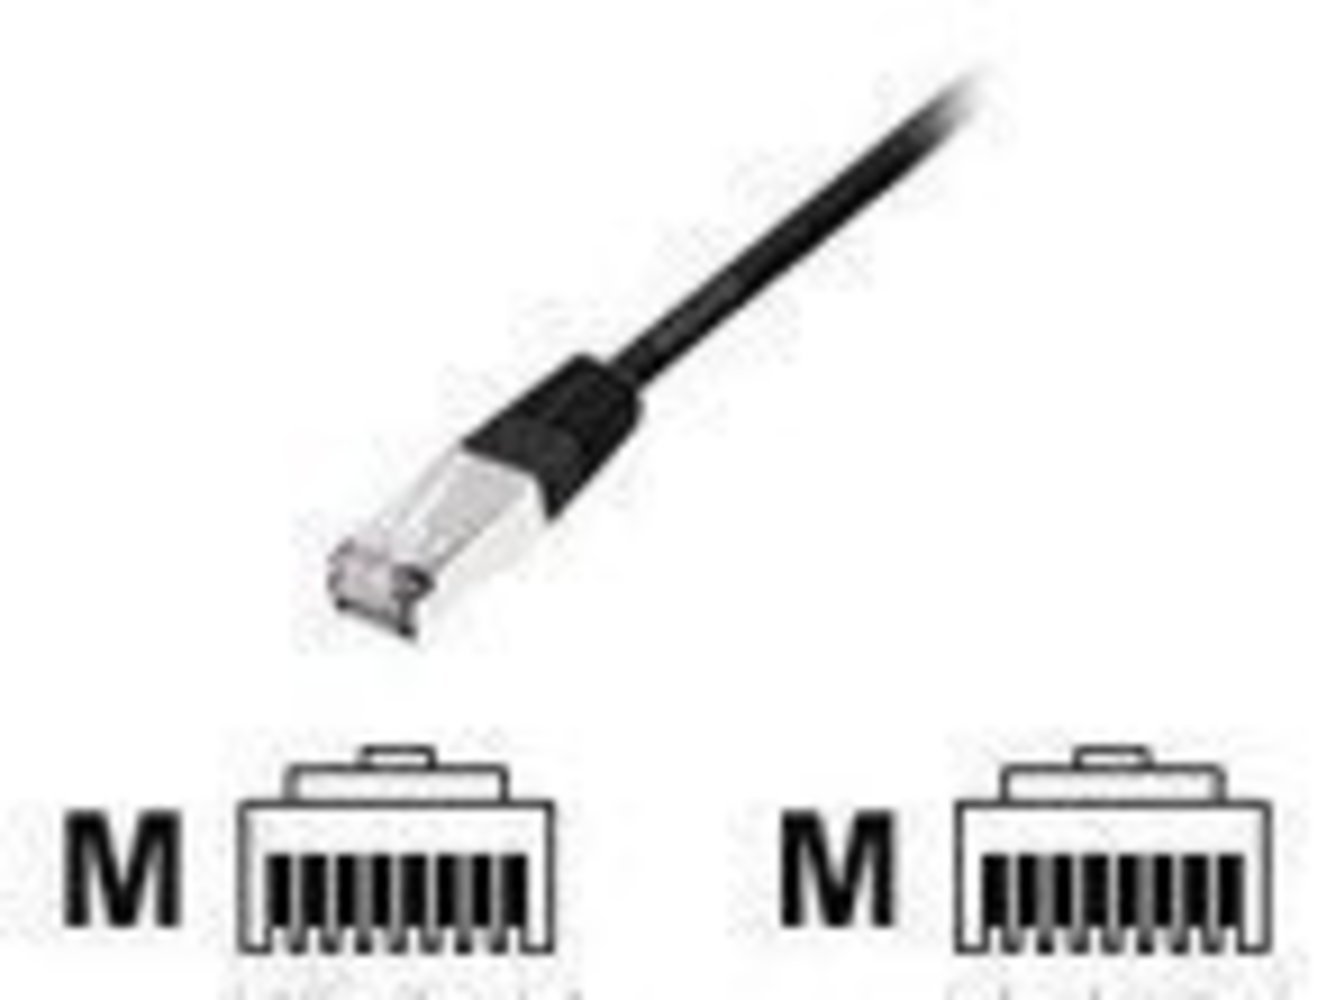  Produkt Titel: EQUIP Patchkabel C6 S/FTP HF schwarz 1m 250MHz - Hochwertiges Ethernet Kabel für schnelle und störungsfreie Datenübertragung